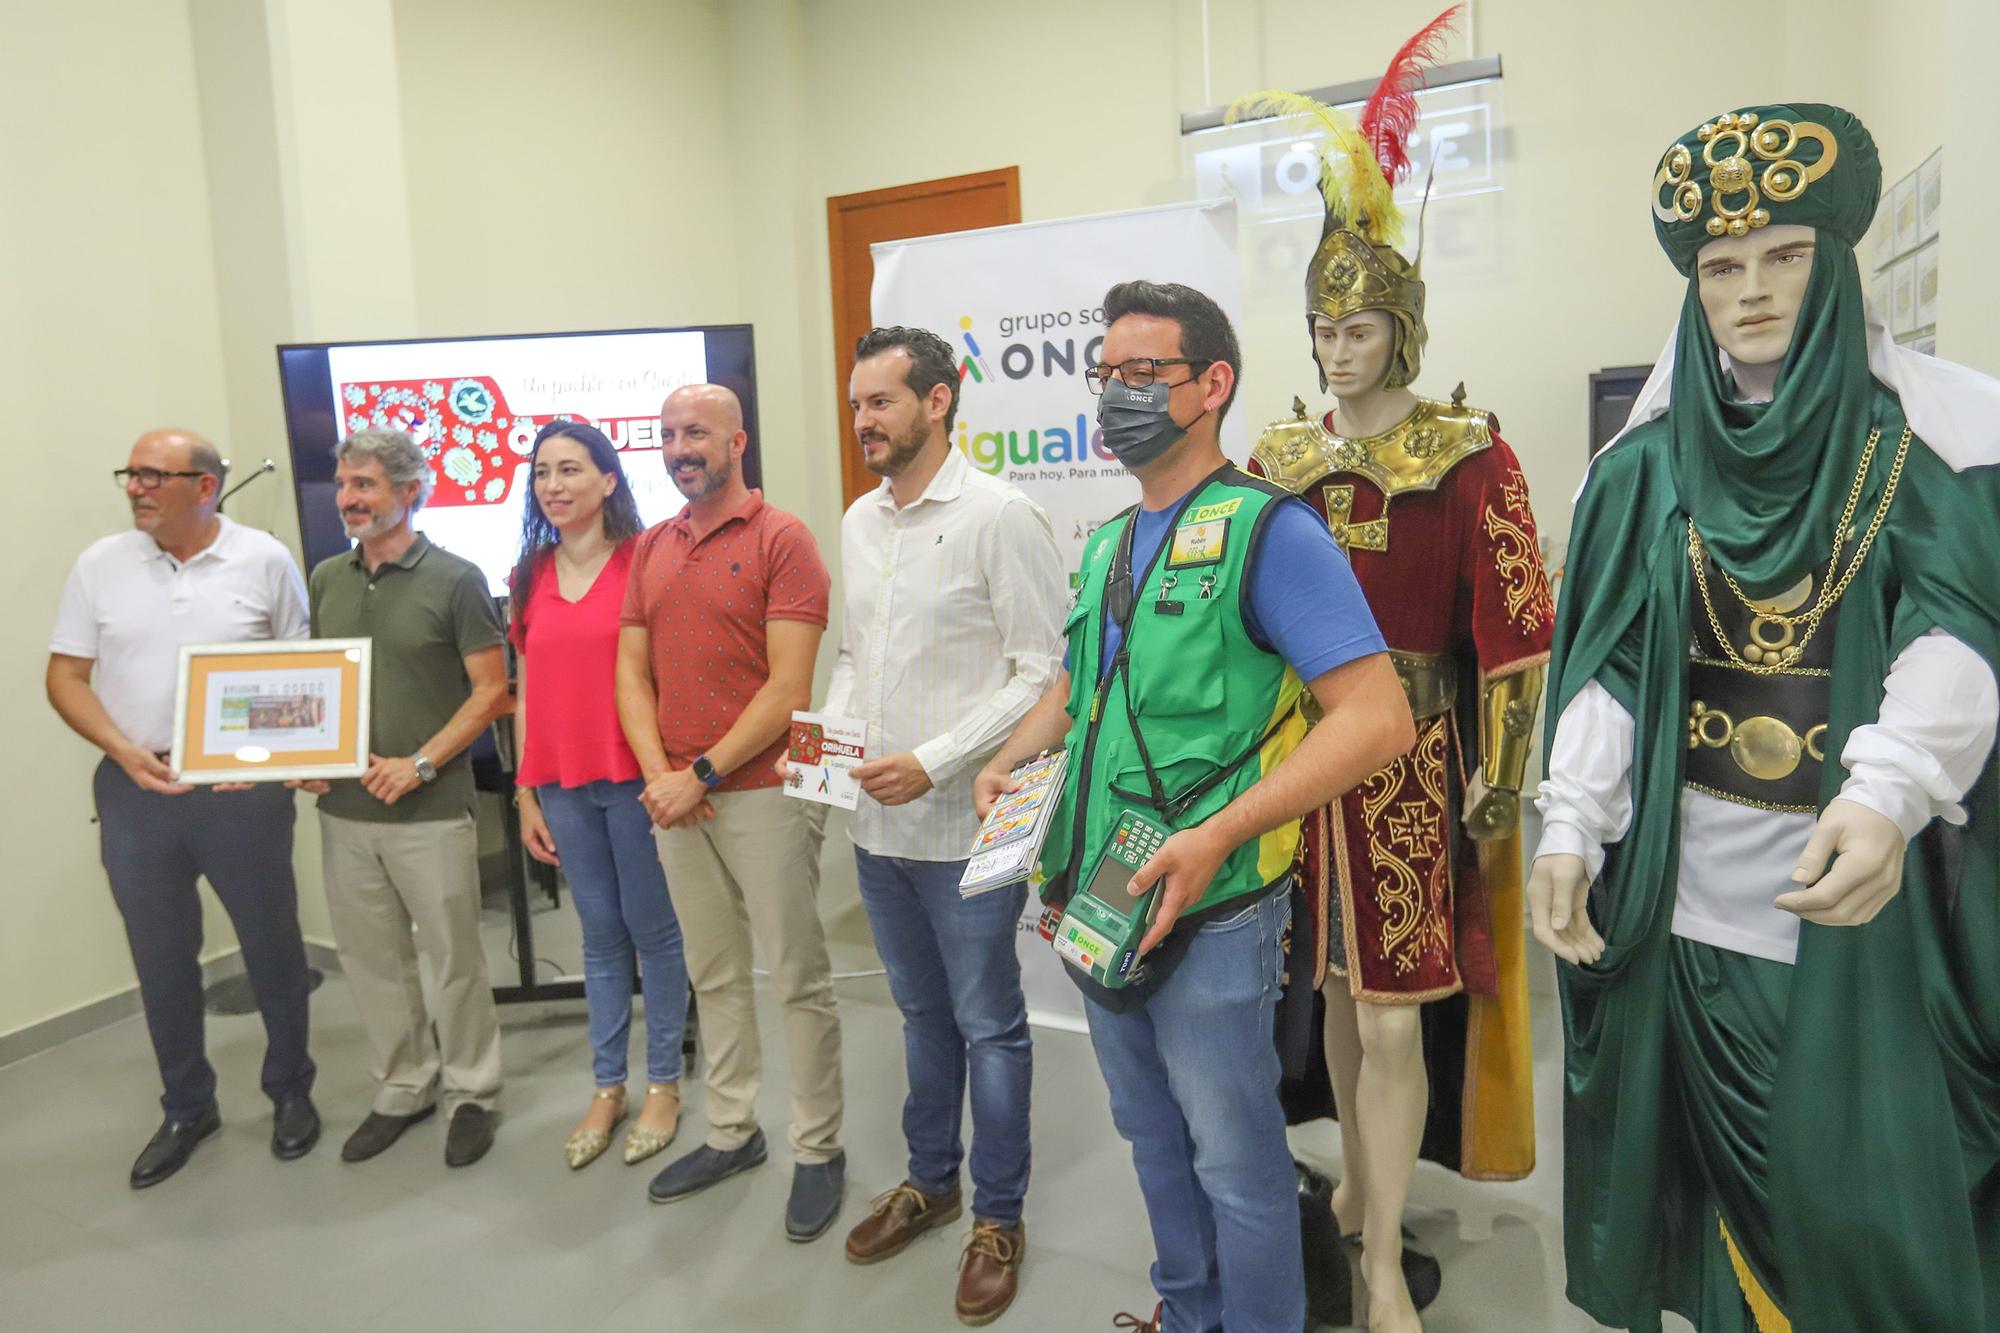 La asociación de Moros y Cristianos de Orihuela ceden 2 trajes a la ONCE para que la fiesta sea más inclusiva